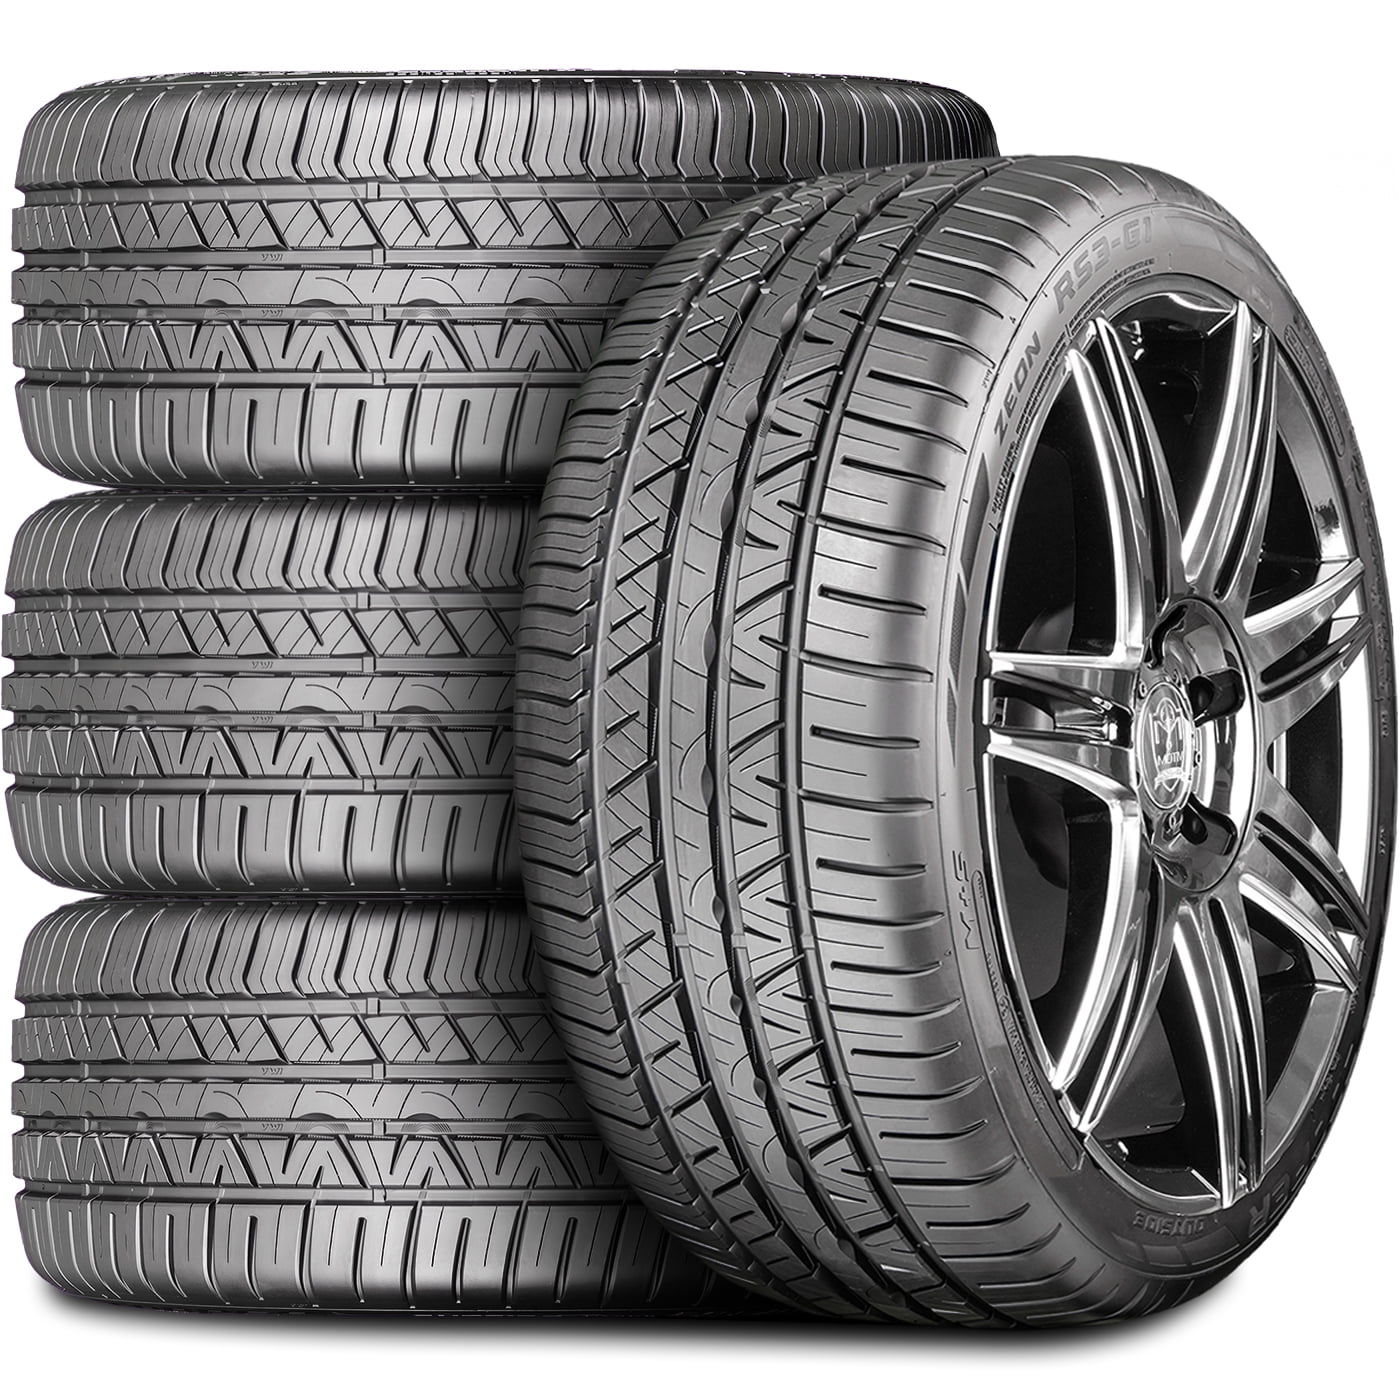 Set of 4 (FOUR) Cooper Zeon RS3-G1 245/45R20 103Y XL A/S High Performance  Tires Fits: 2005-10 Chrysler 300 C SRT8, 2006-10 Dodge Charger SRT8